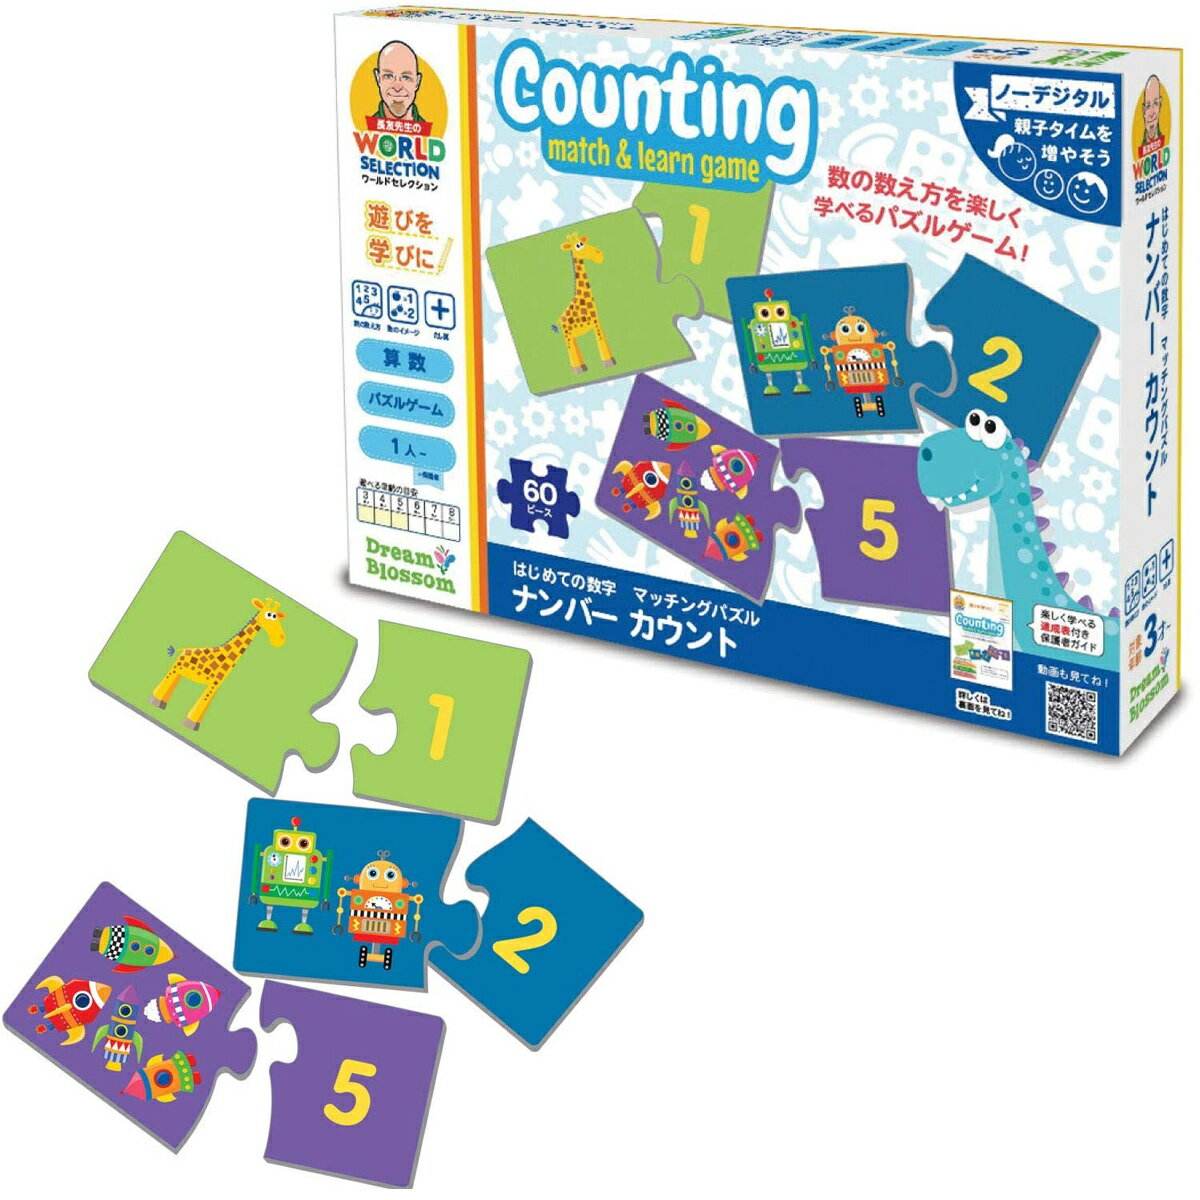 長友先生が世界中の知育玩具の中から厳選した算数教材 マッチングパズル。親子で一緒に遊びながら学べる算数ゲームです。 幼児から楽しく学べる算数おもちゃ。パズルゲームで楽しく数字の概念を覚えよう。「勉強」していることを感じさせない、工夫を凝らした幼児向け算数ゲーム です。 「遊びを学びに」を合言葉に、テレビやスマートフォンの画面から離れ、 親子間のコミュニケーションを増やすことを目的とした教材シリーズ。 大きなパズルで数の数え方を学ぼう! 数の数え方を楽しく学べるパズルゲームです。 イラストと数字のピースをピッタリ合わせよう。基本のあそびに加えて、3つのレベルから遊びを選べます。 数の大きさや多さを比較したり、簡単な足し算などをして楽しく数を学びましょう。 詳しい遊び方は、公式サイト[ dreamblossom ]をチェック! 動画やワンポイントなど楽しい学びをお手伝いするフリーコンテンツが満載です。 【特徴】 * 対象年齢 : 3〜5歳 * 身につく力 : 数の数え方、数のイメージ、たし算 * プレーヤー数 : 1人〜 * 習熟度別に3段階に分けられた6種類の遊び方 * 充実した内容の保護者ガイド付き * パズルをしながら、数の大きさを比較したり、簡単なたし算ができるようになる! 【セット内容】 パズルピース 60枚(30組) 保護者ガイド 安全警告 小部品があります。誤飲・窒息の危険がありますので、3歳未満のお子様には絶対に与えないでください。